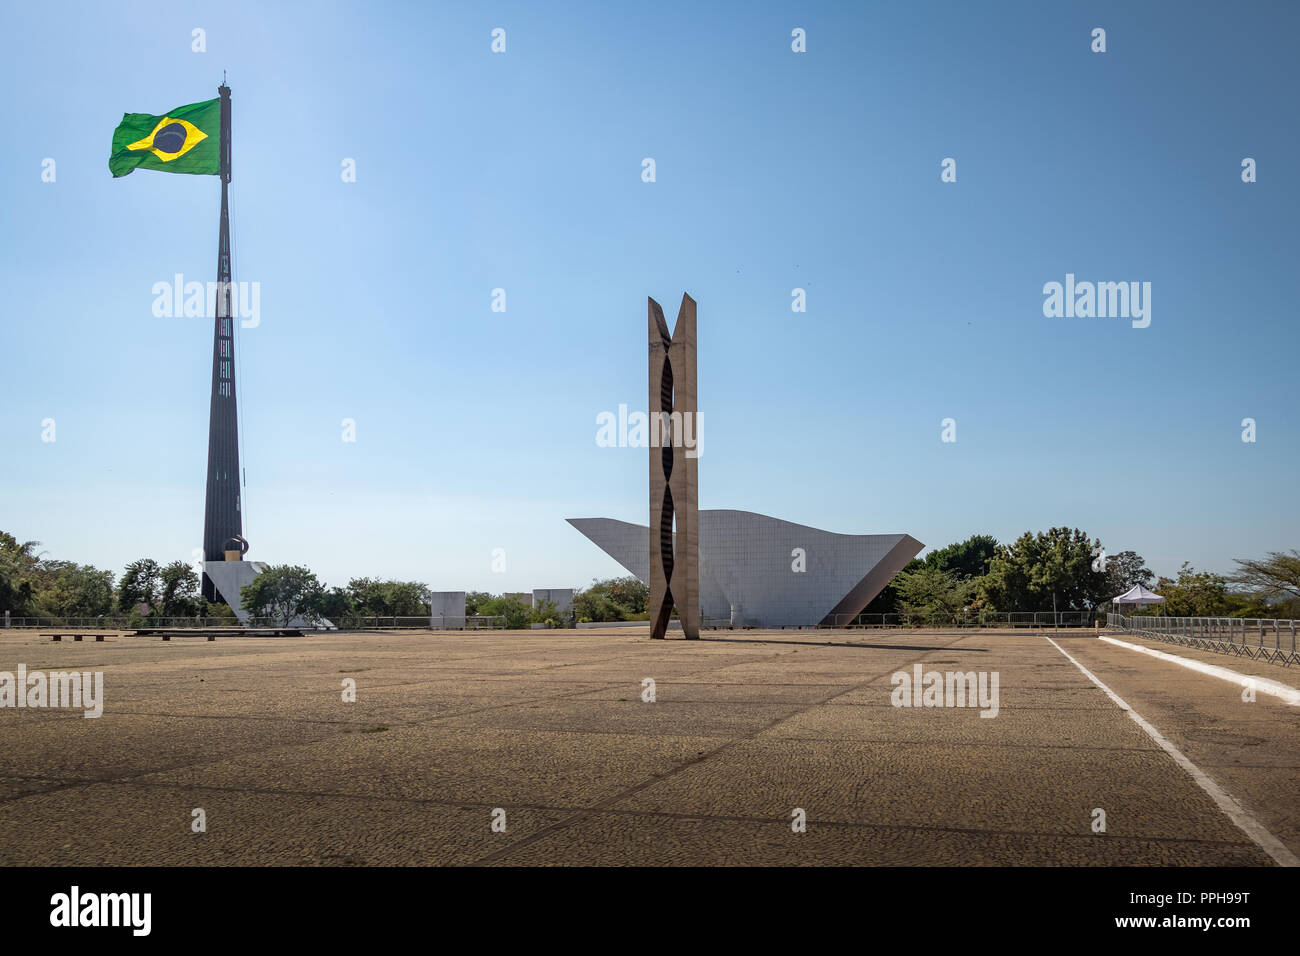 Trois puissances Plaza (Praca dos Tres Poderes) et drapeau brésilien - Brasilia, District Fédéral, Brésil Banque D'Images